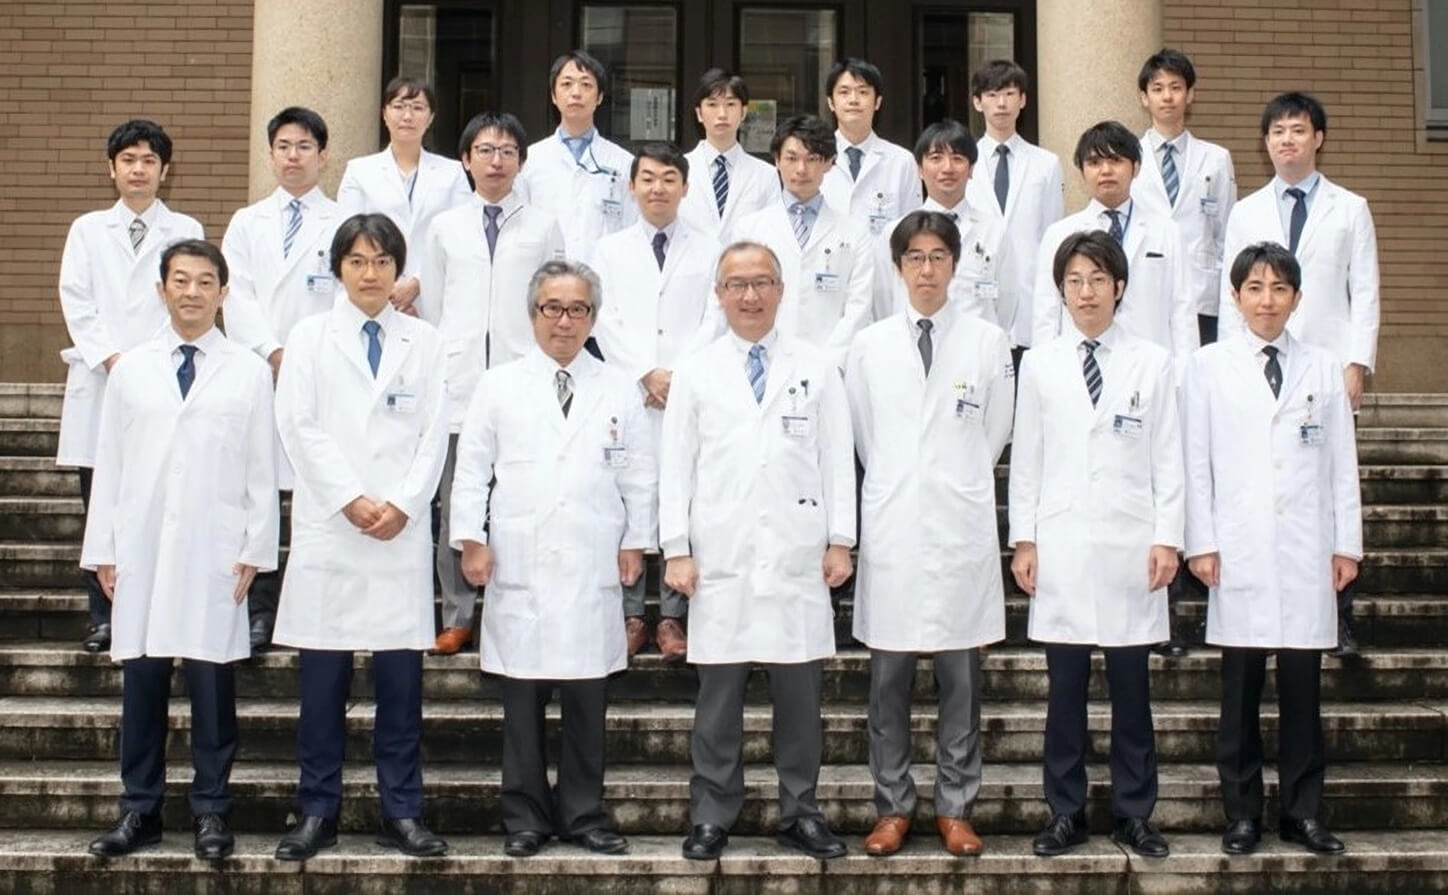 左から2番目：金井隆典（内科学教室（消化器）教授、IBD(炎症性腸疾患)センター長）、左から3番目：筆者